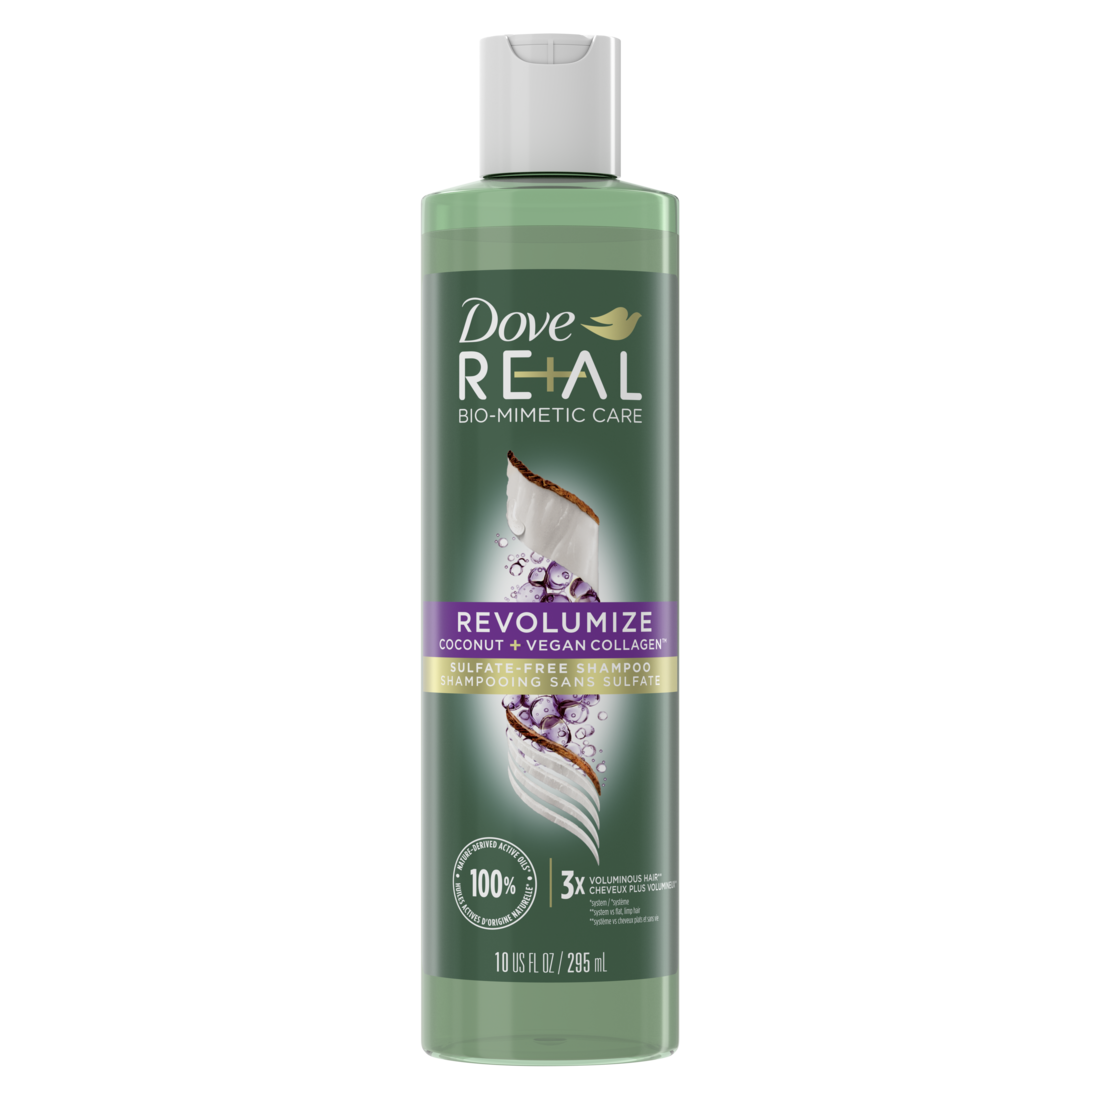 Dove RE+AL Bio-Mimetic Care Revolumize Shampoo 295ml